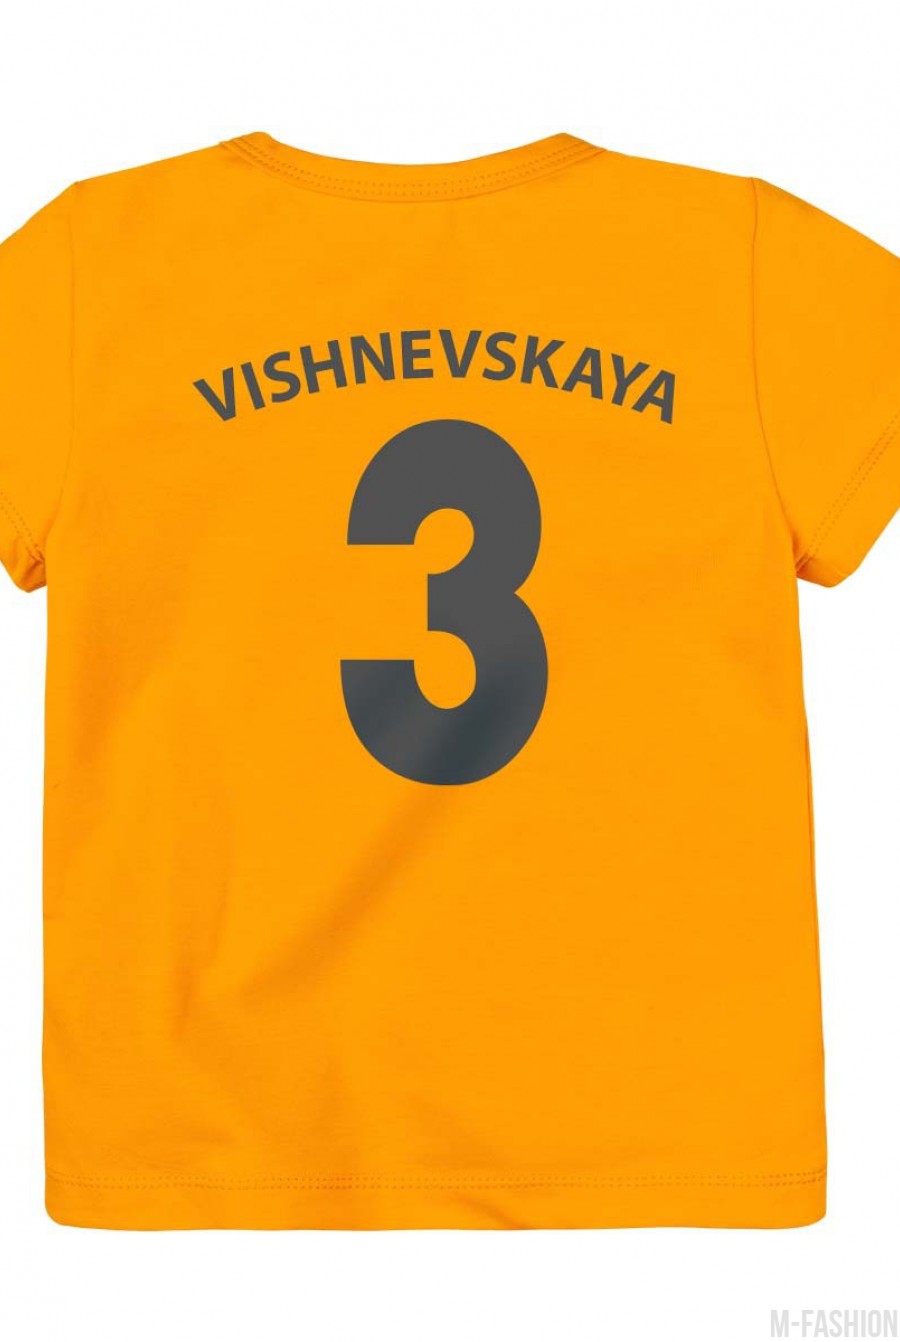 Оранжевая трикотажная футболка с возможностью индивидуальной печати фамилии и номера на принте - Фото 1